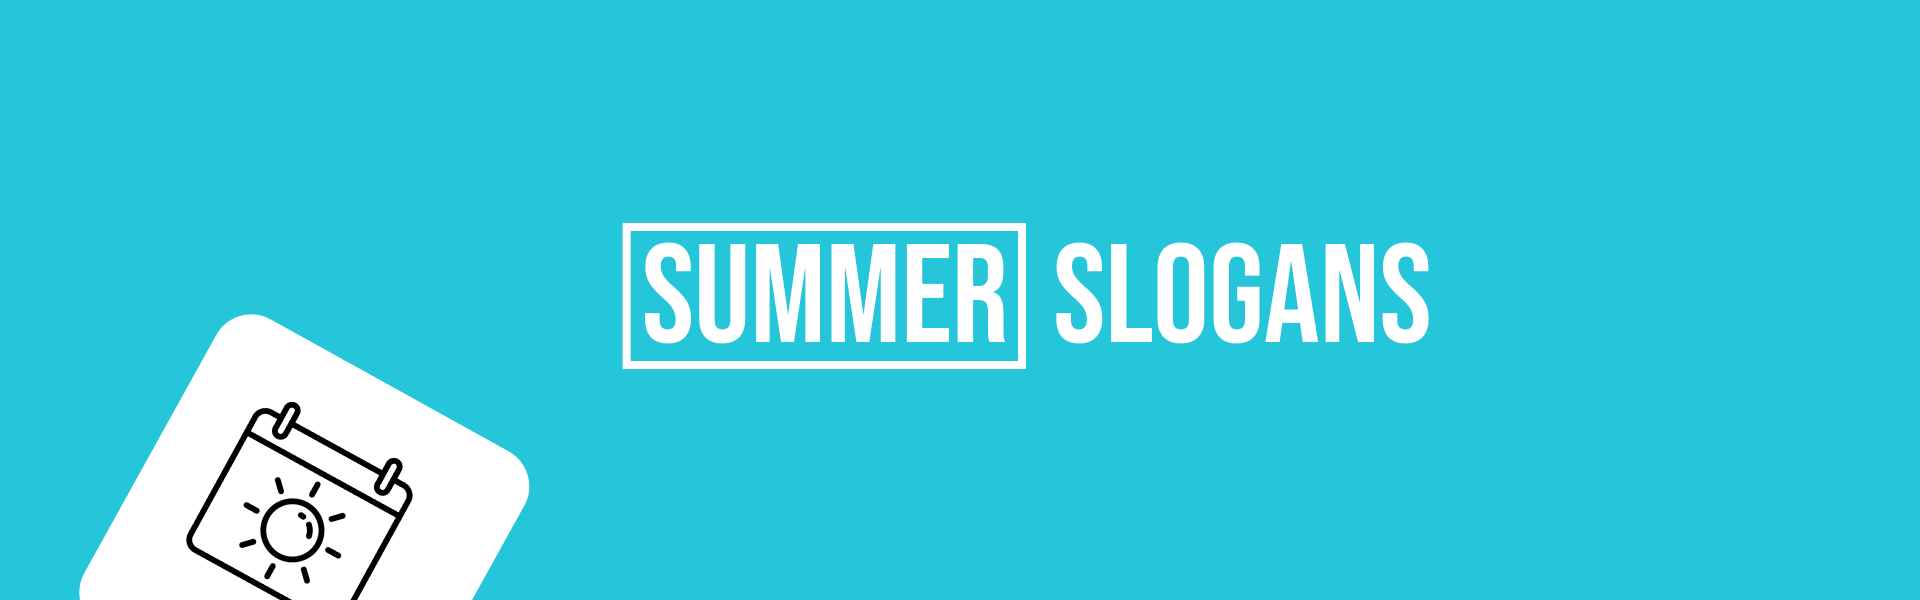 summer-slogans-featured